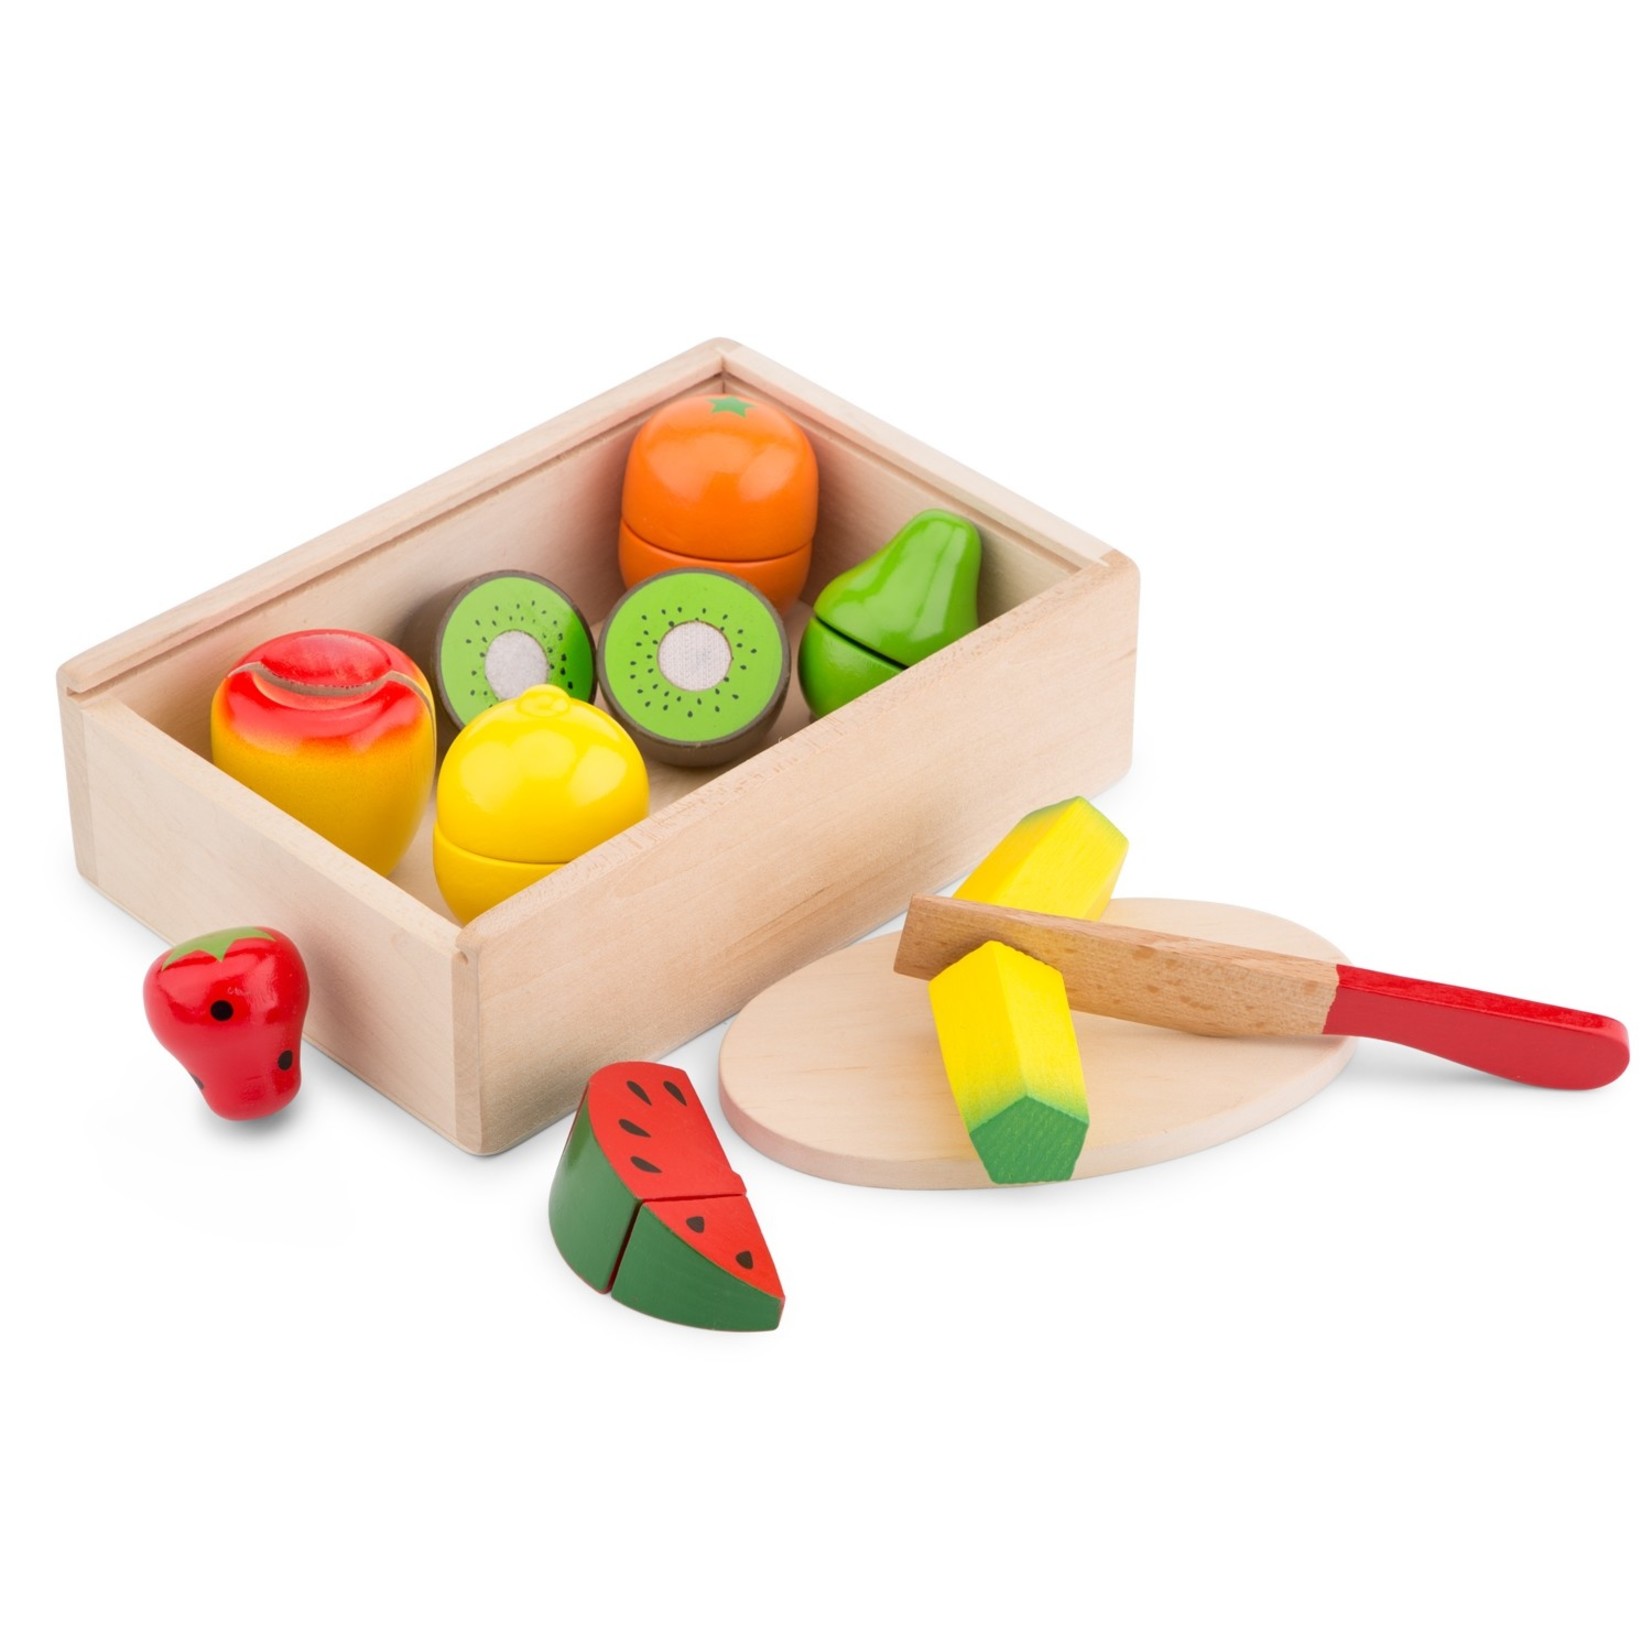 Buitenland klimaat Verwachting New Classic Toys - Houten Snijset | Fruit Box - COCON